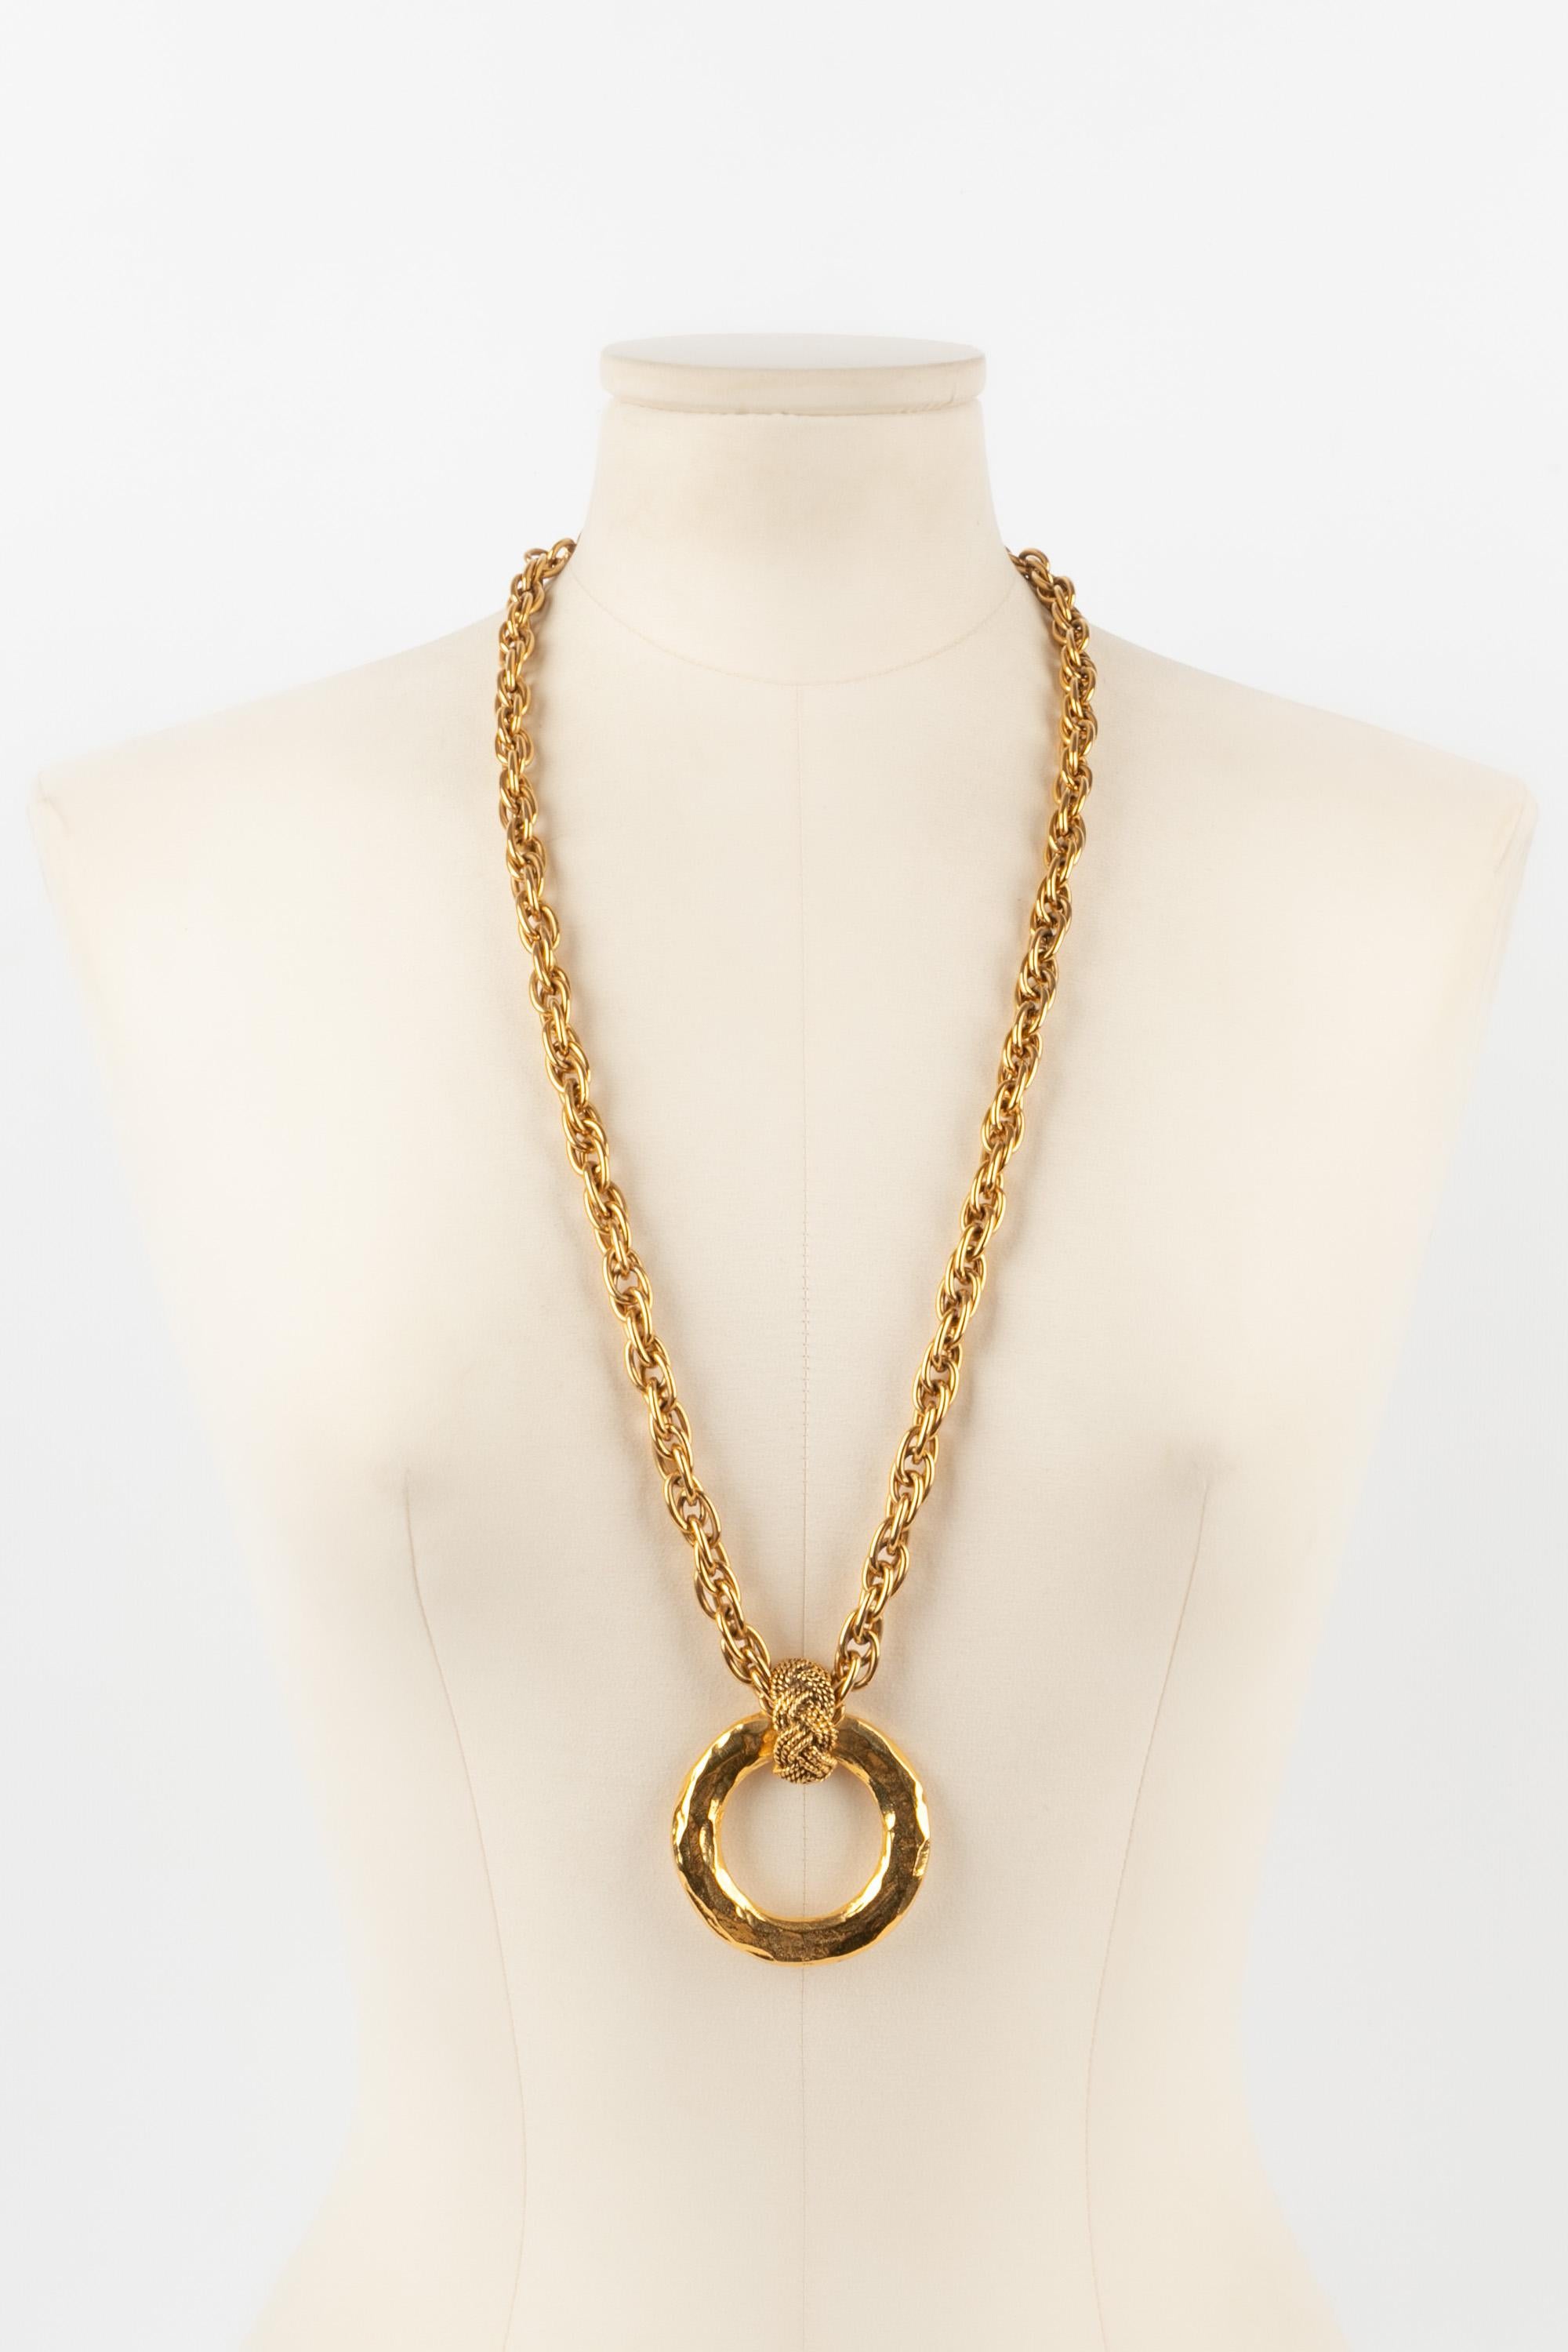 CHANEL - (Fabriqué en France) Collier en métal doré avec un pendentif circulaire. Bijoux des années 1980.

Condit :
Très bon état.

Dimensions :
Longueur : 78 cm

CB269